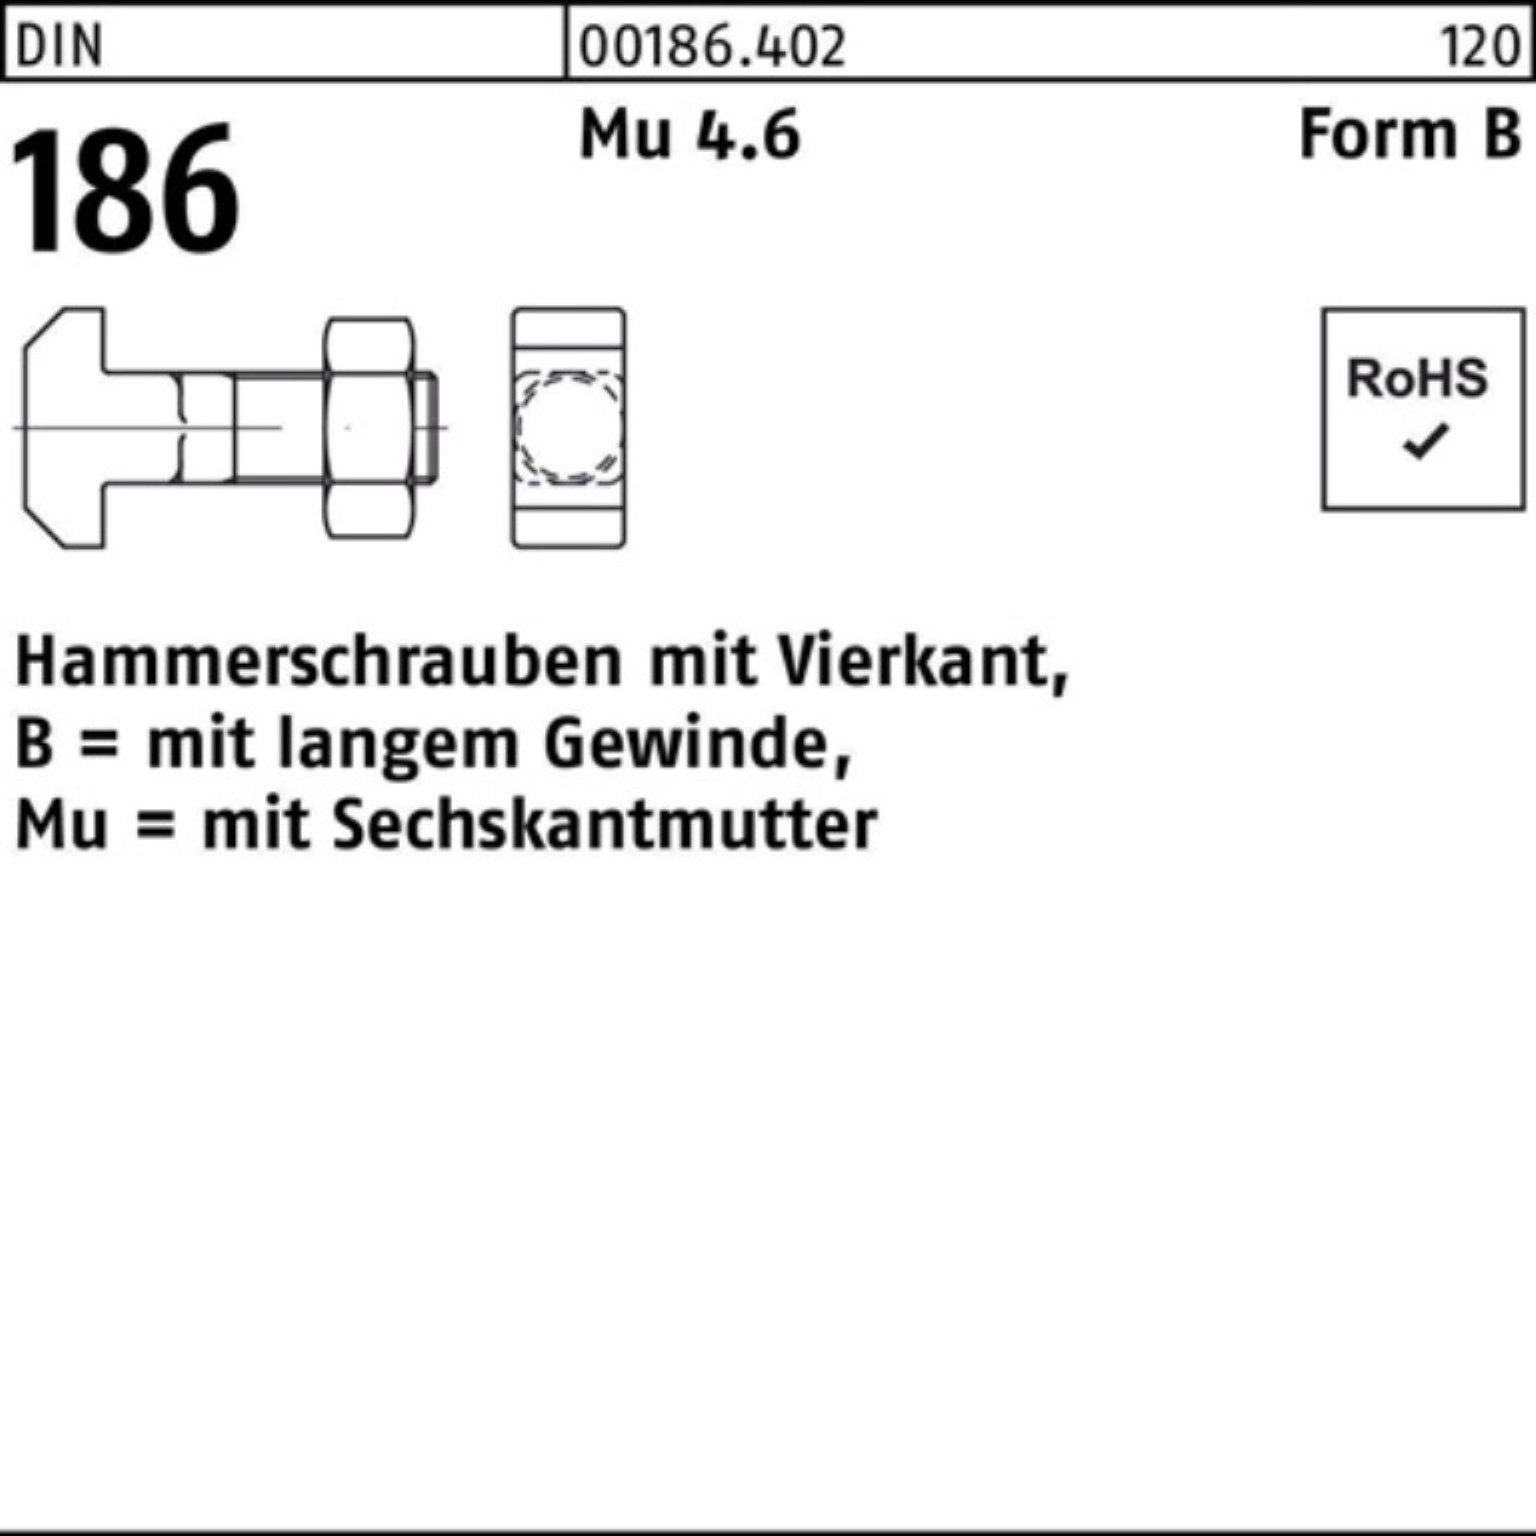 Reyher 100er DIN BM 6-ktmutter Pack Hammerschraube 90 16x Schraube 186 Vierkant FormB